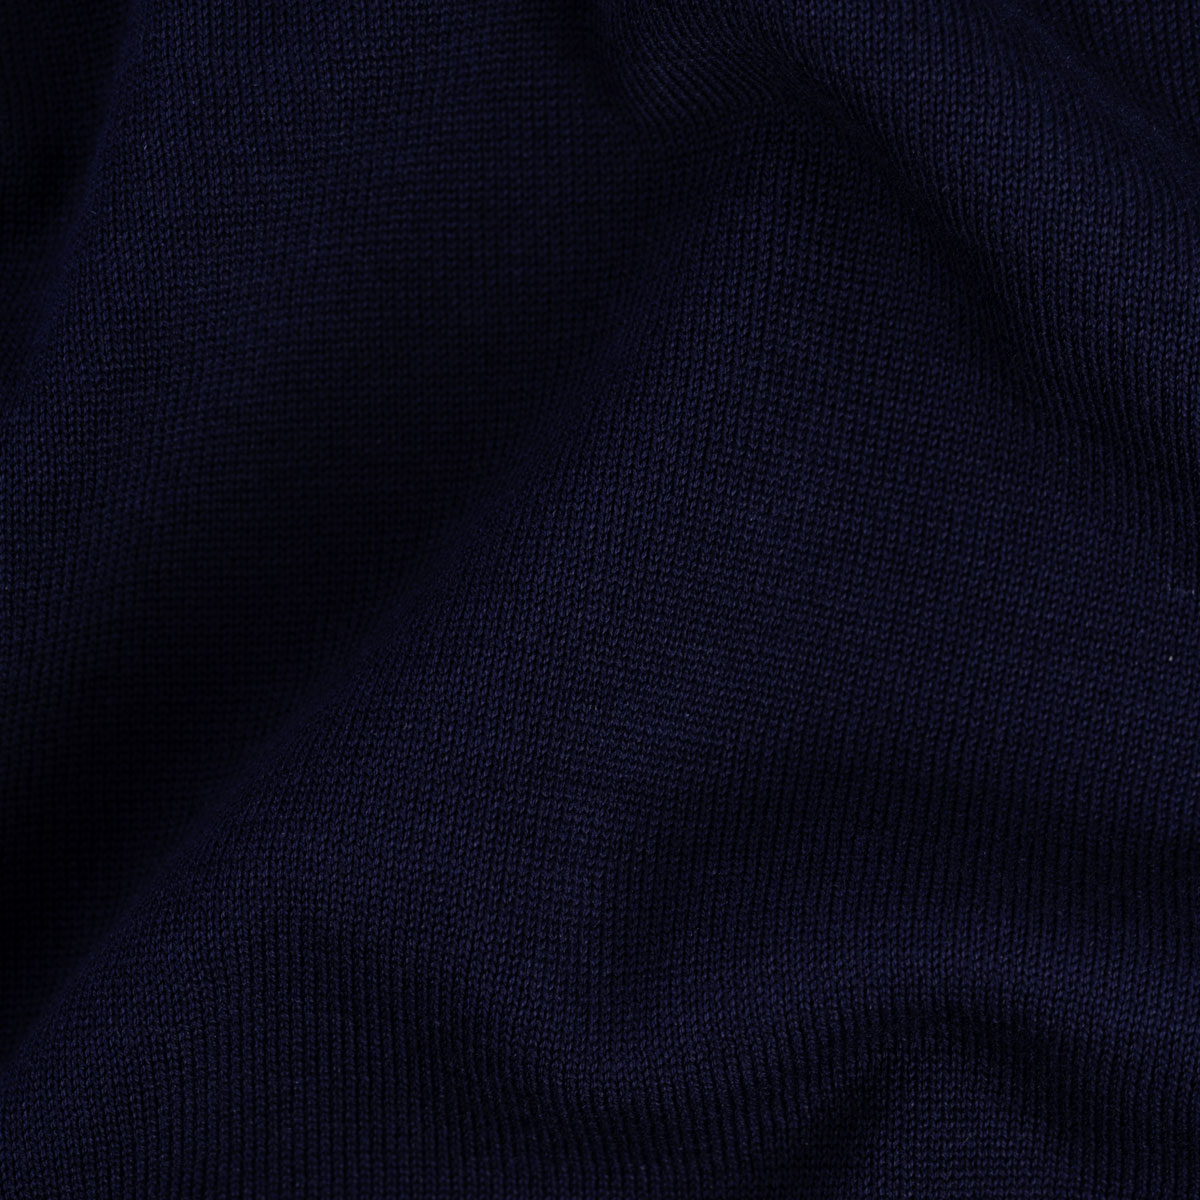 V-Ausschnitt Pullover in dunkelblau mit Seidenanteil